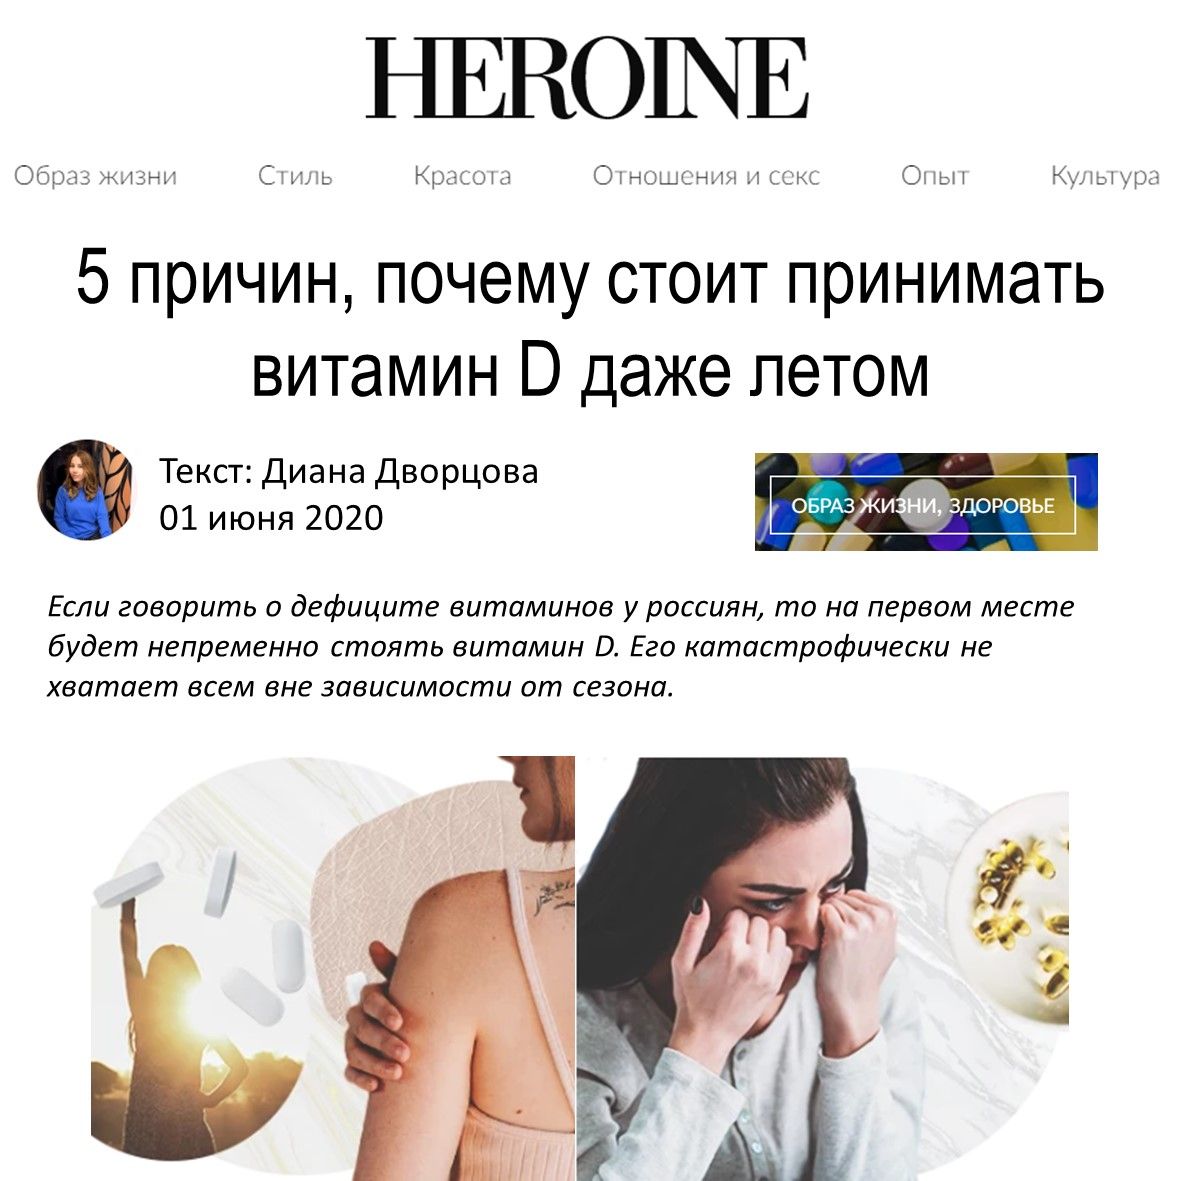 HEROINE - 5 причин почему стоит принимать витамин D даже летом